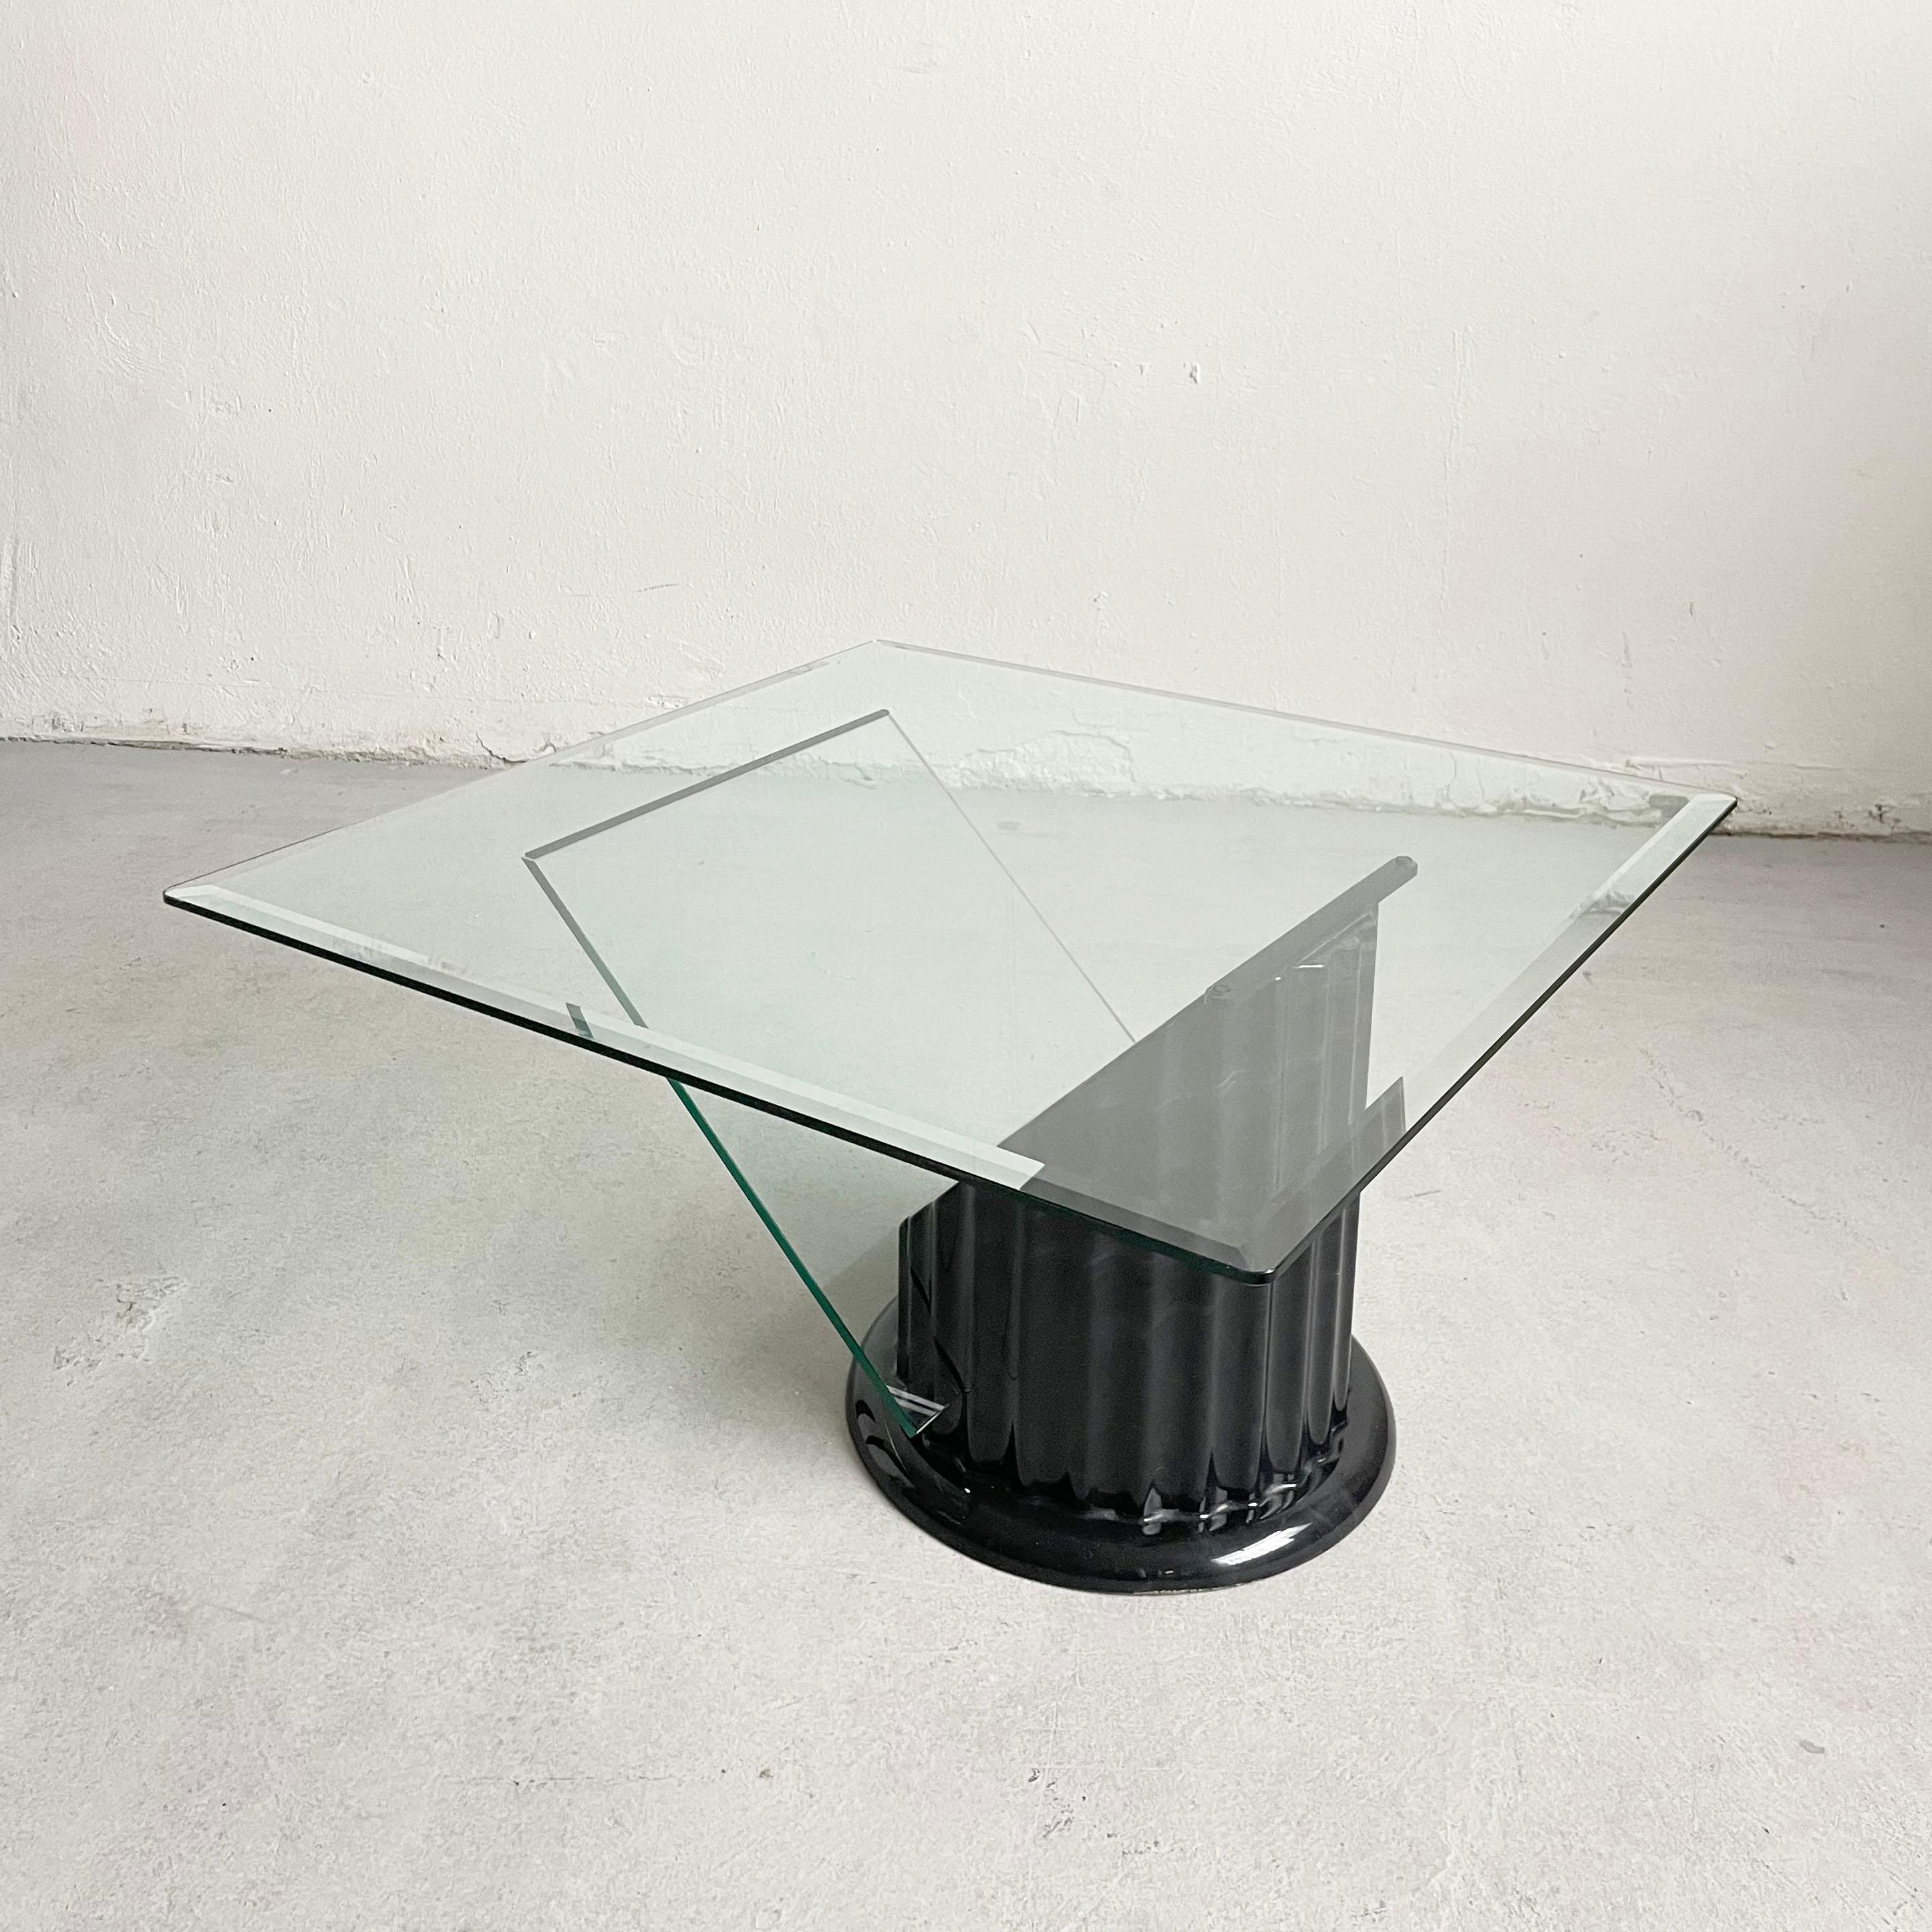 Postmoderner Couchtisch aus Klarglas aus den 1980er Jahren

Schöne zeitgenössische Neuinterpretation der klassischen Form A 

Der skulpturale Sockel des Tisches ist aus Kunstmarmor gefertigt. 

Der Tisch ist in tollem Vintage-Zustand. Das Glas weist